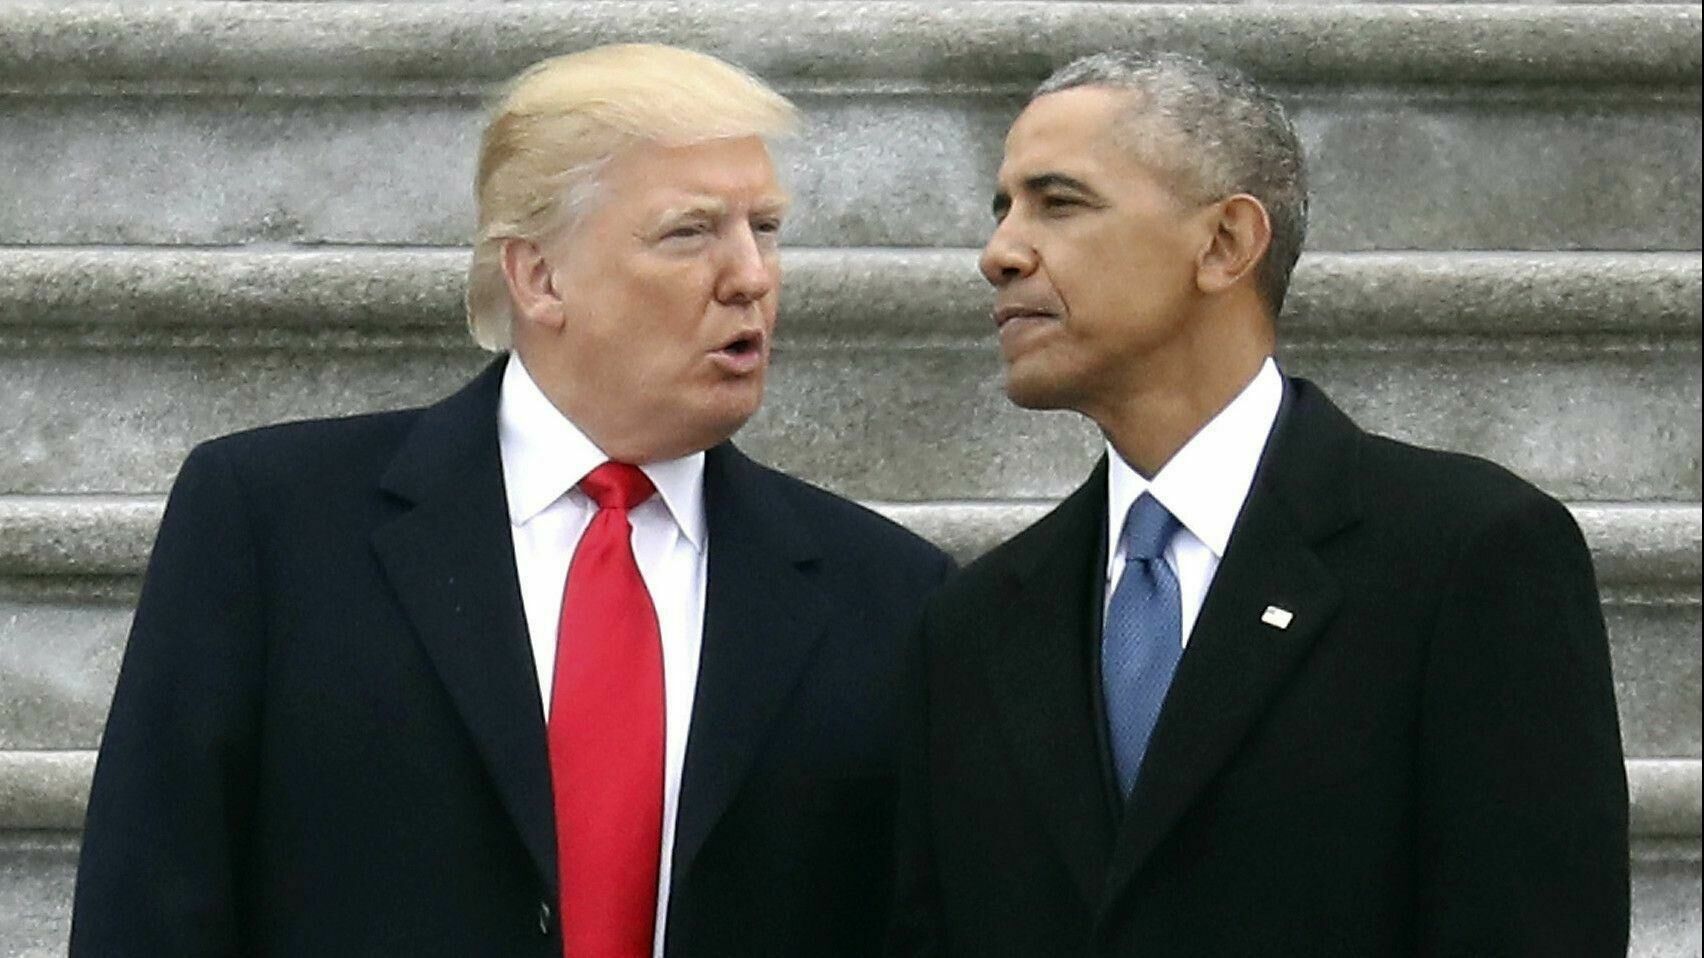 Трамп опередил Обаму в рейтинге одобрения президента